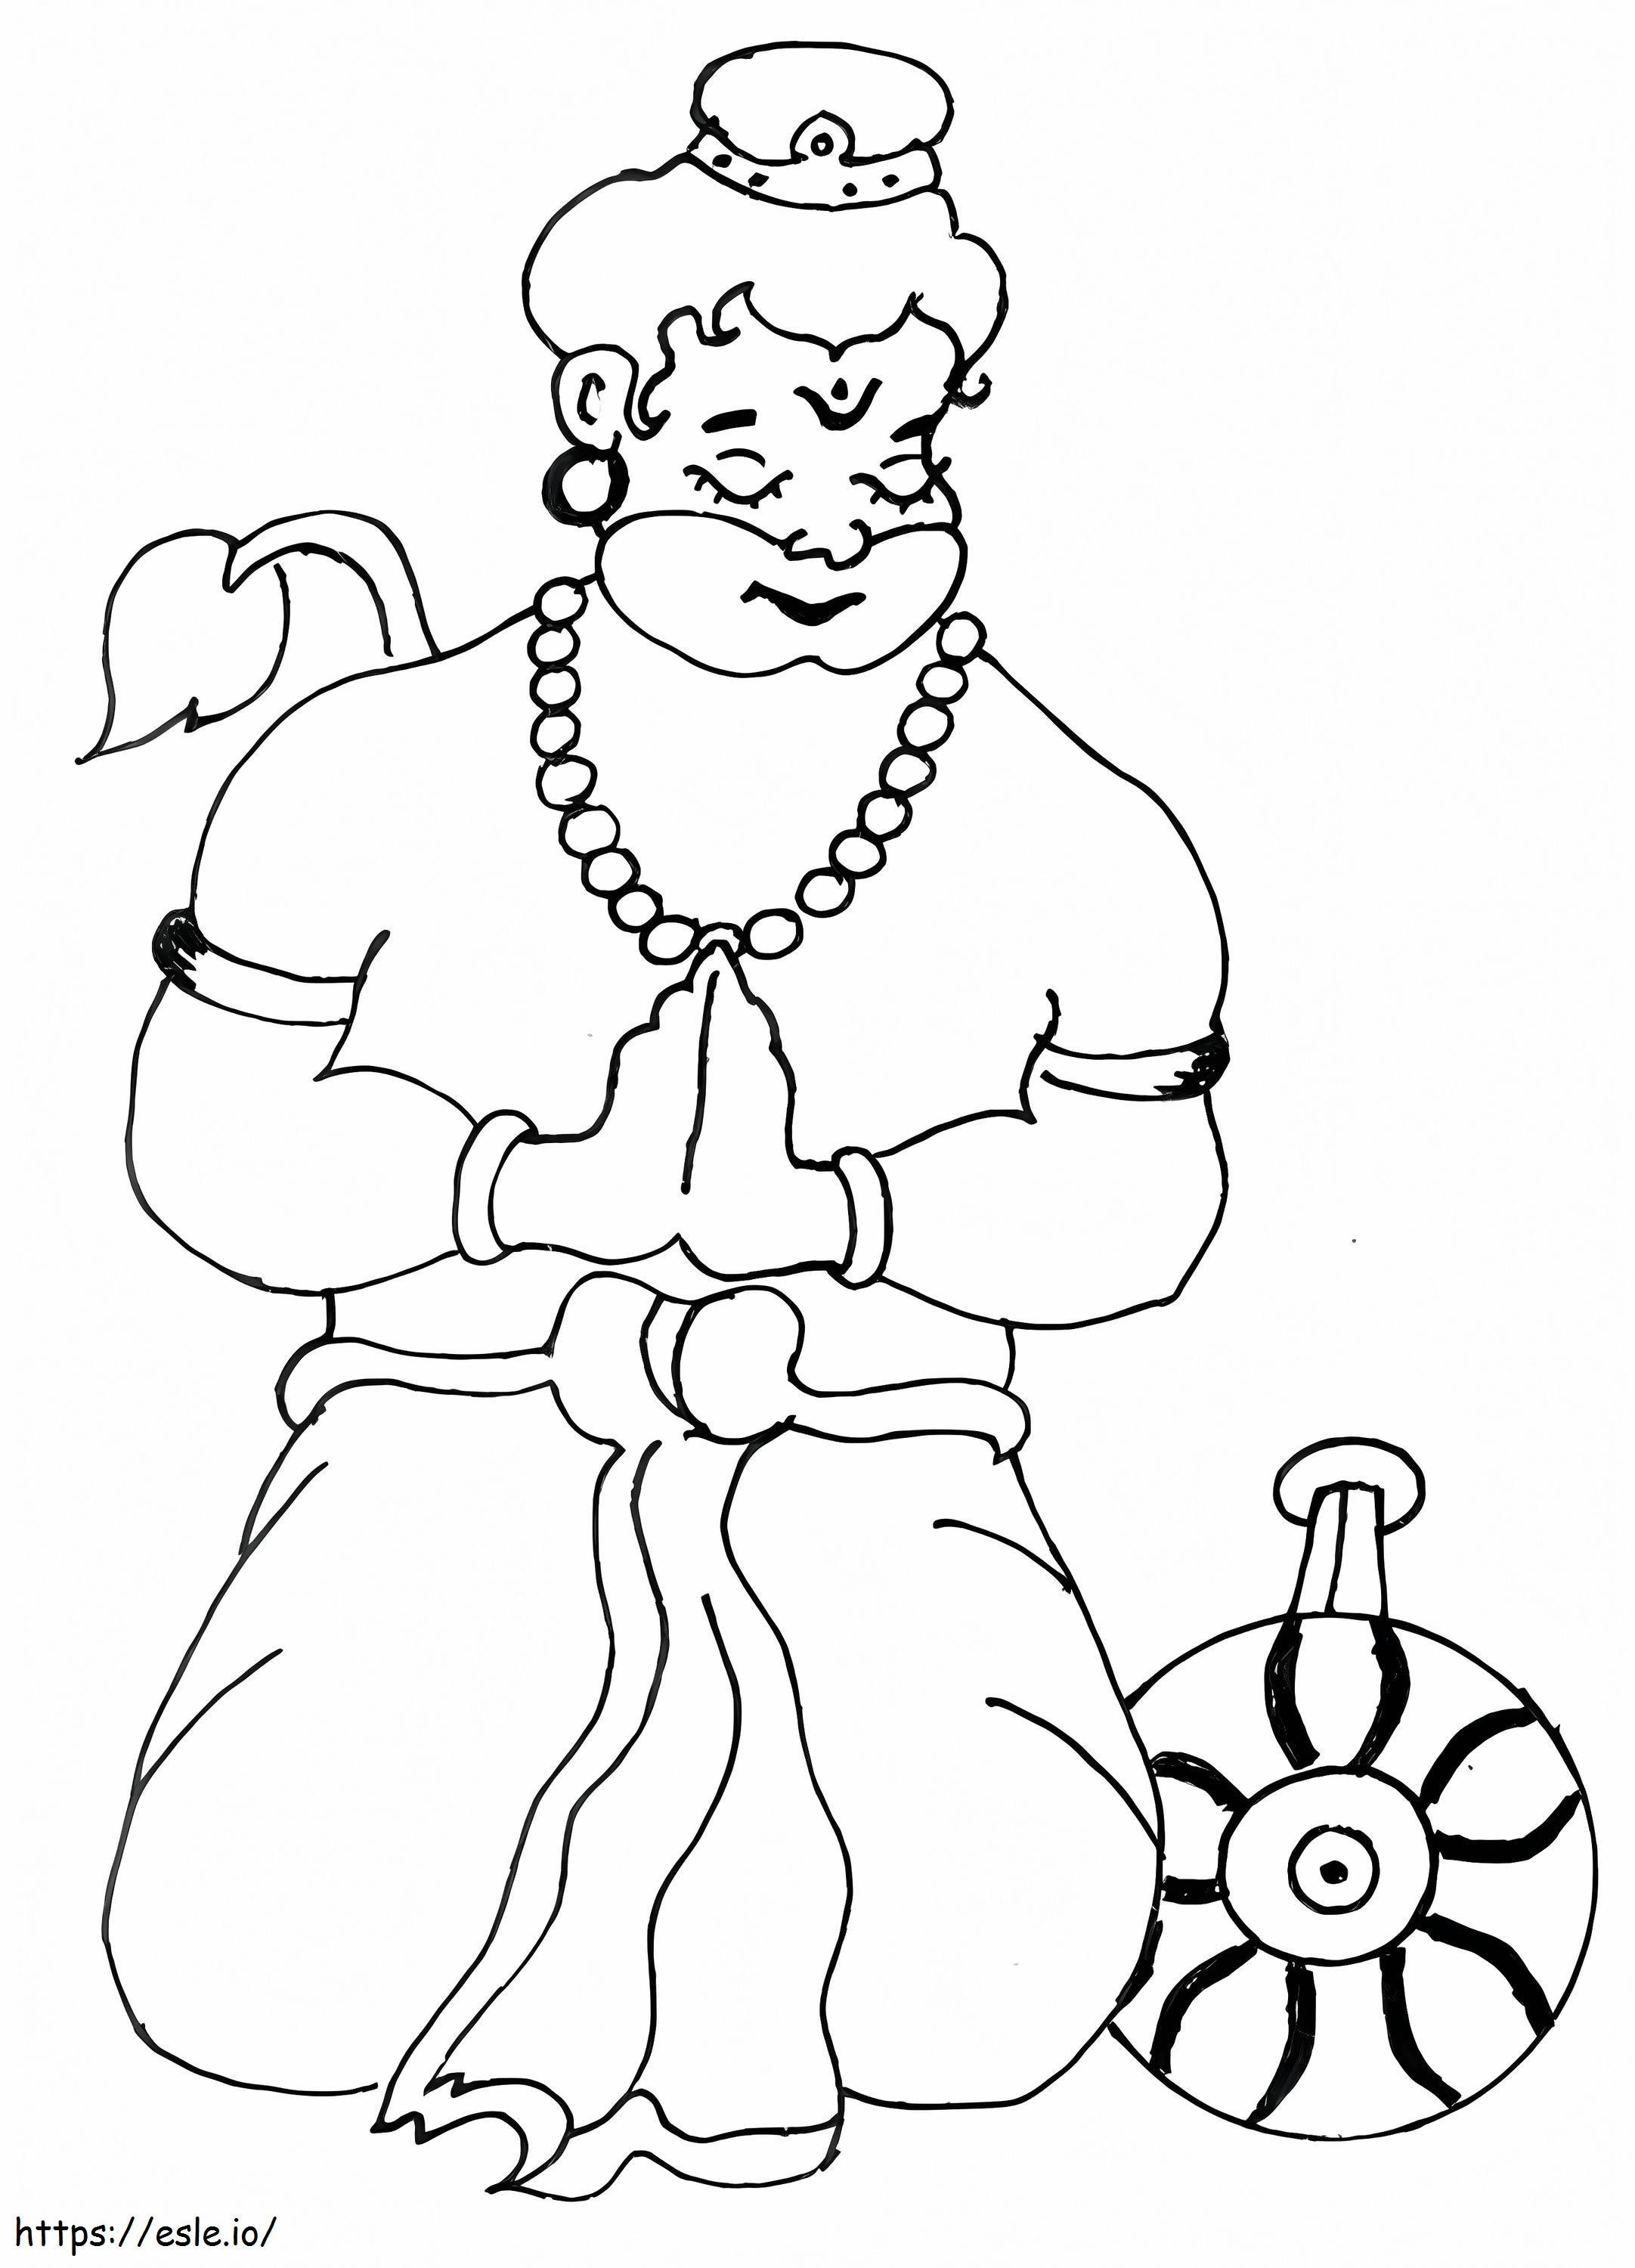 Hanuman Jayanti 4 ausmalbilder